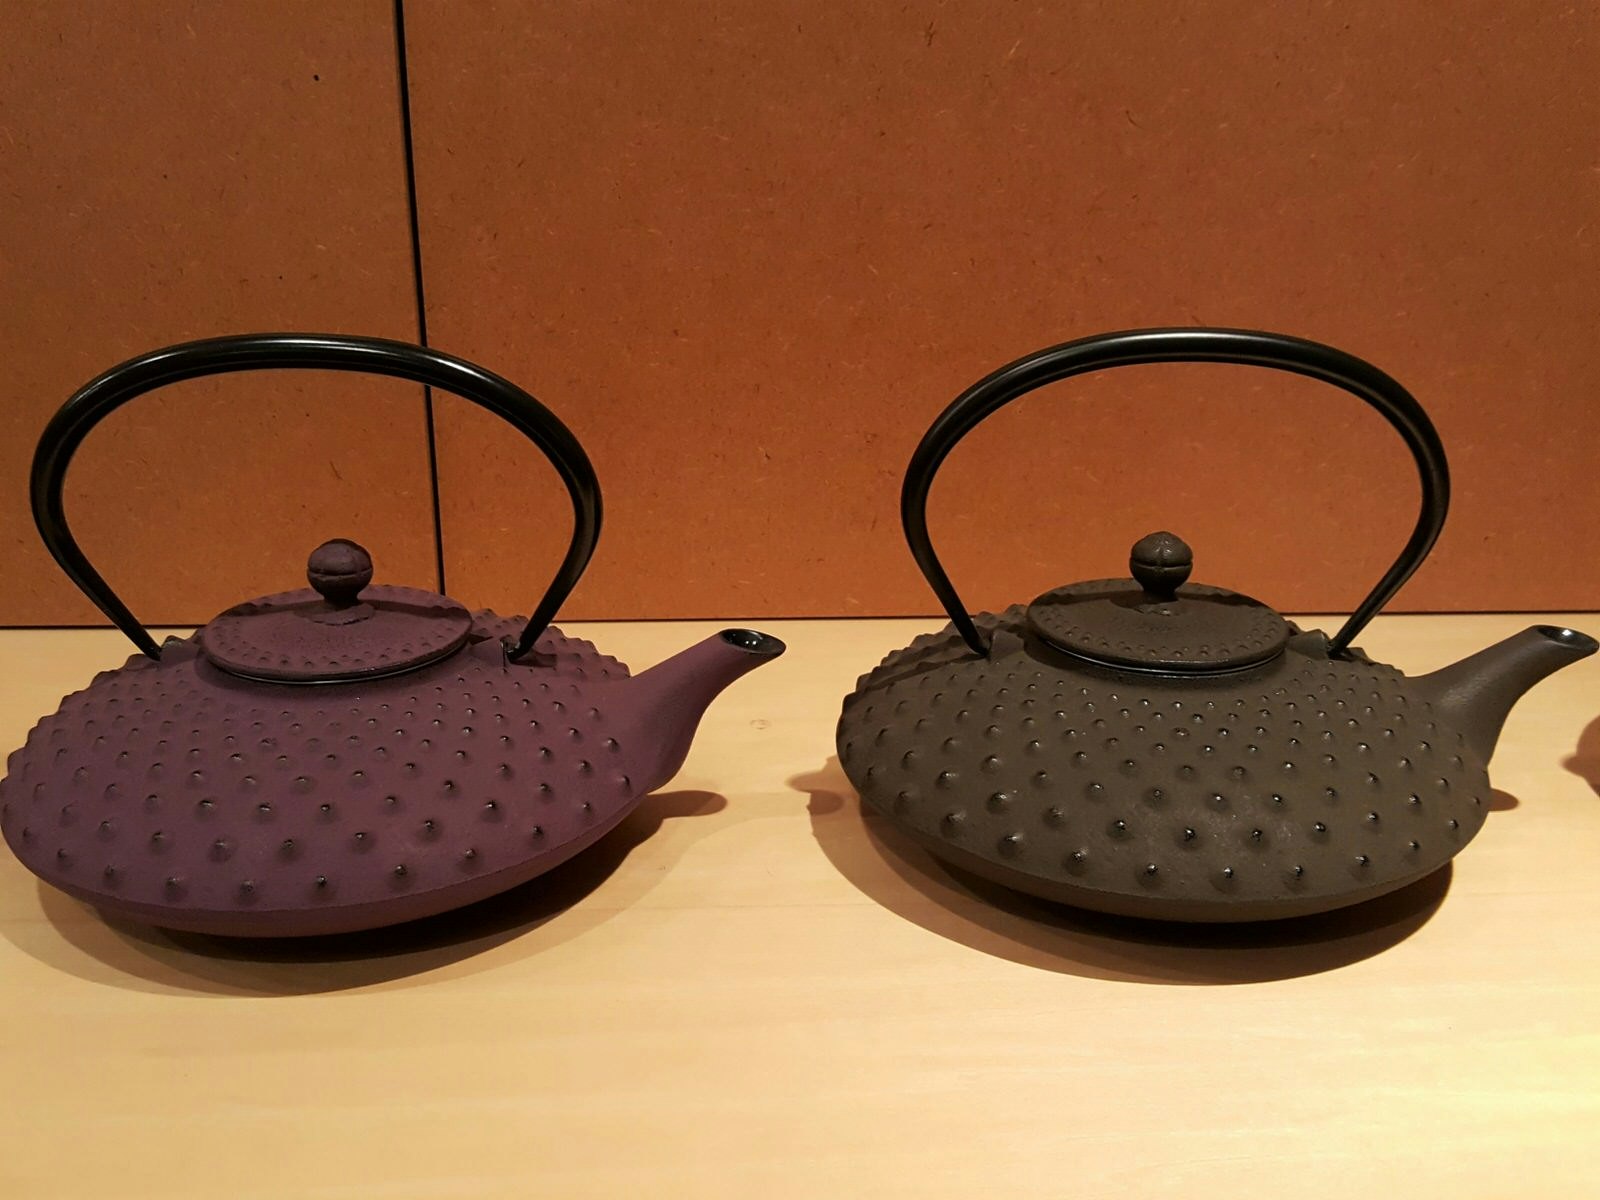 Två tekokare i gjutjärn, en lila och en svart, på en utställningshylla i Iwachu